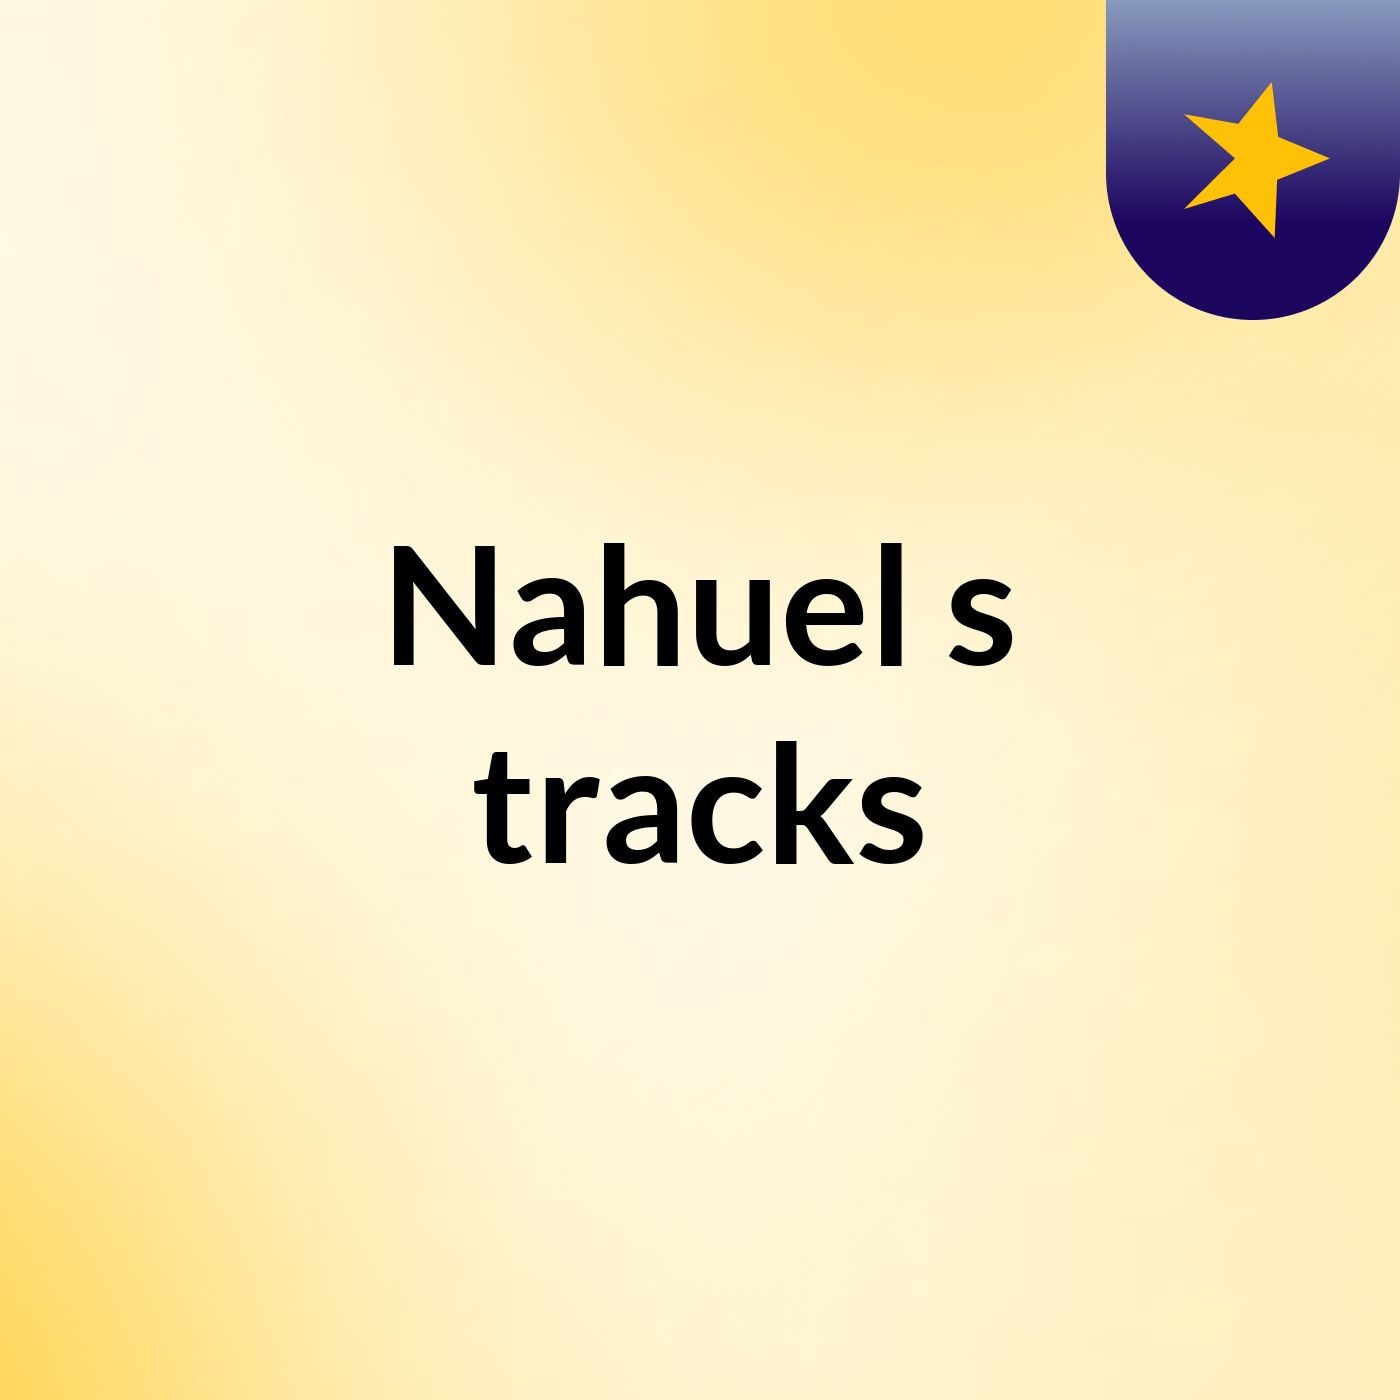 Nahuel's tracks